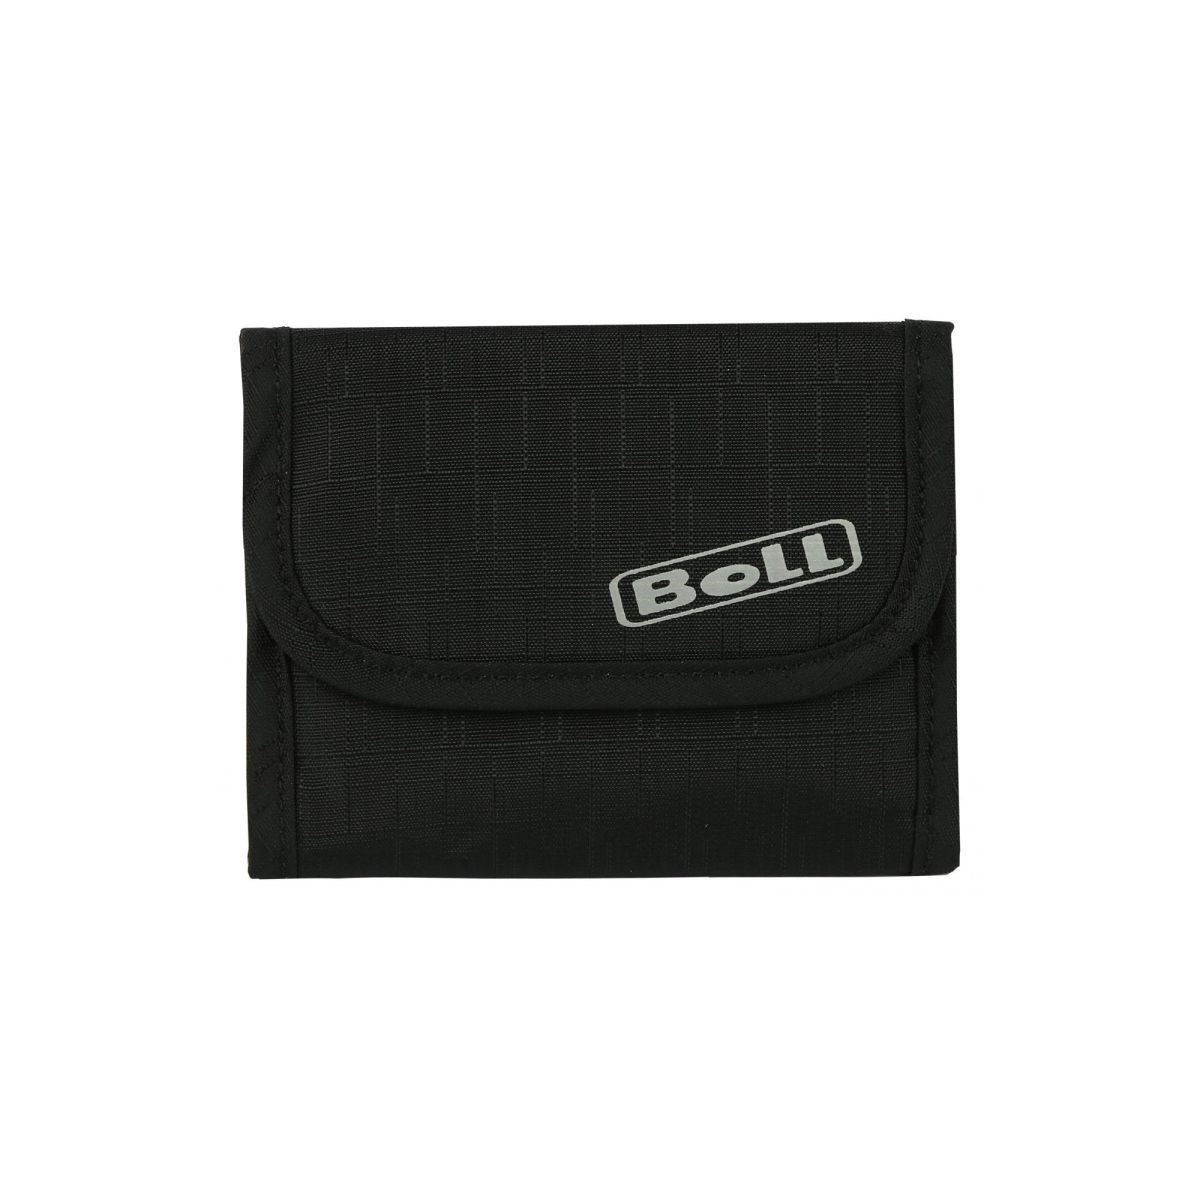 Peněženka Boll Deluxe Wallet black/lime Boll 10006622 L-11